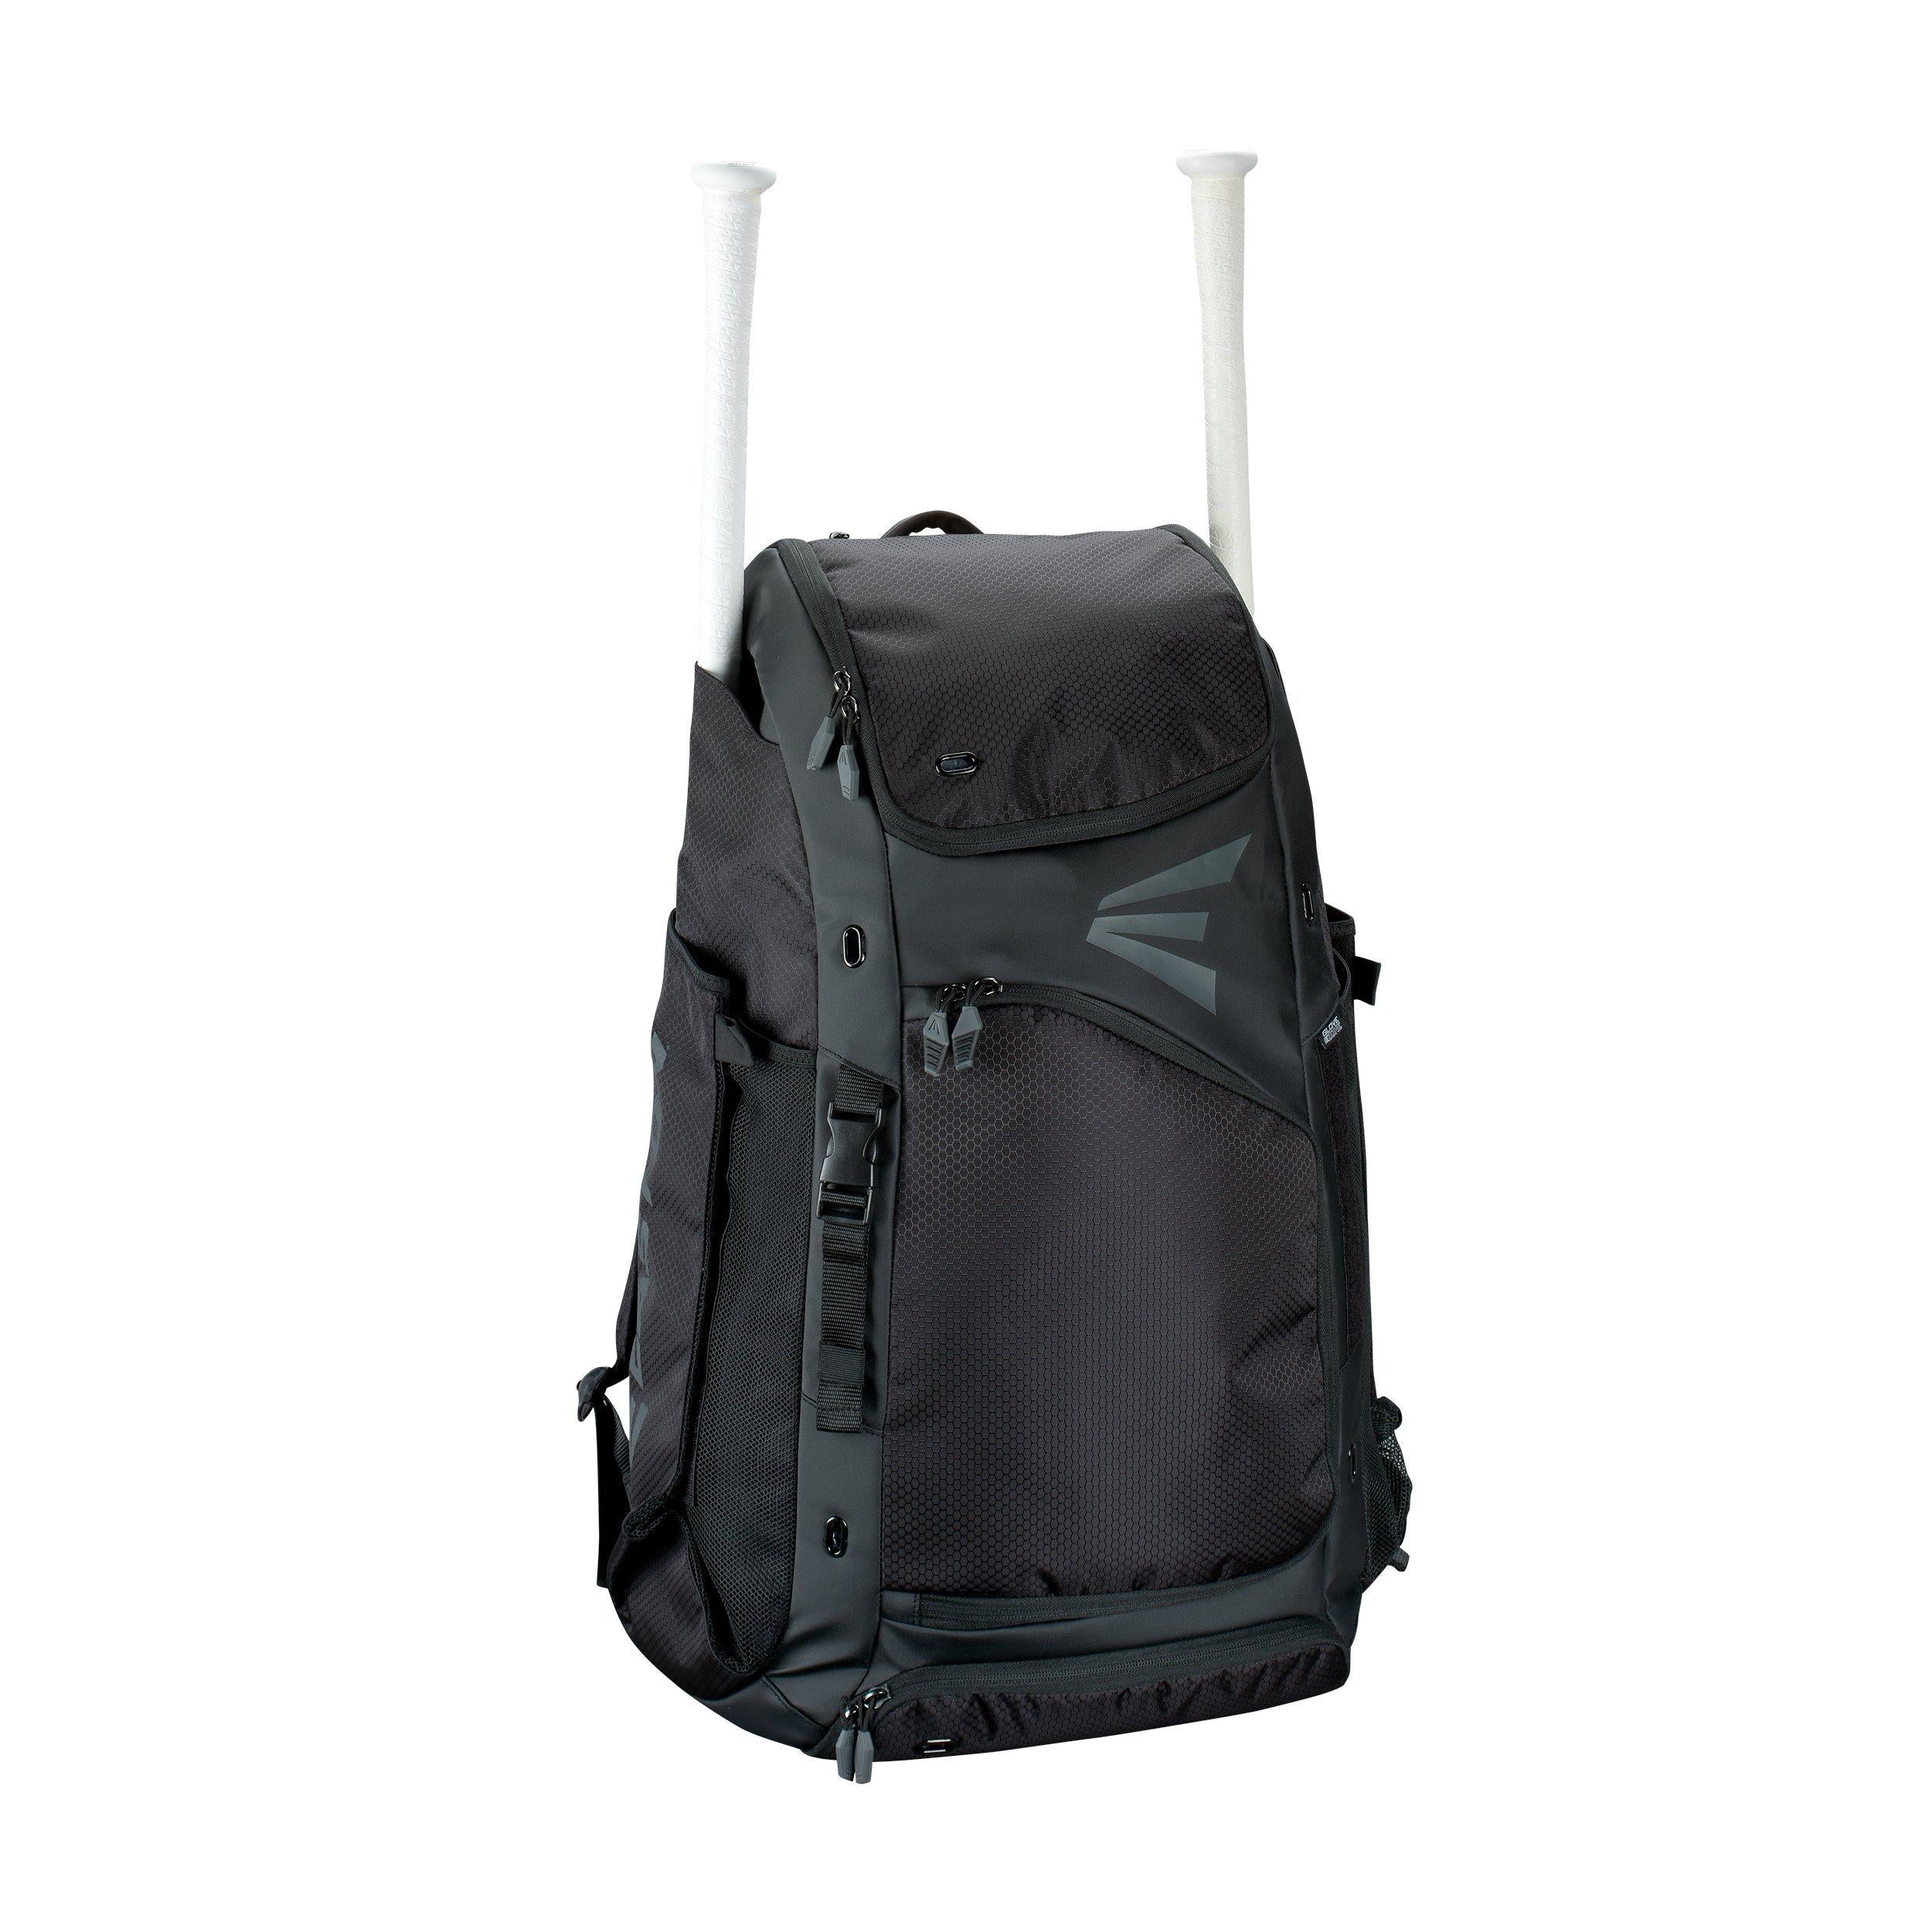 Easton E610CBP Catcher's Backpack